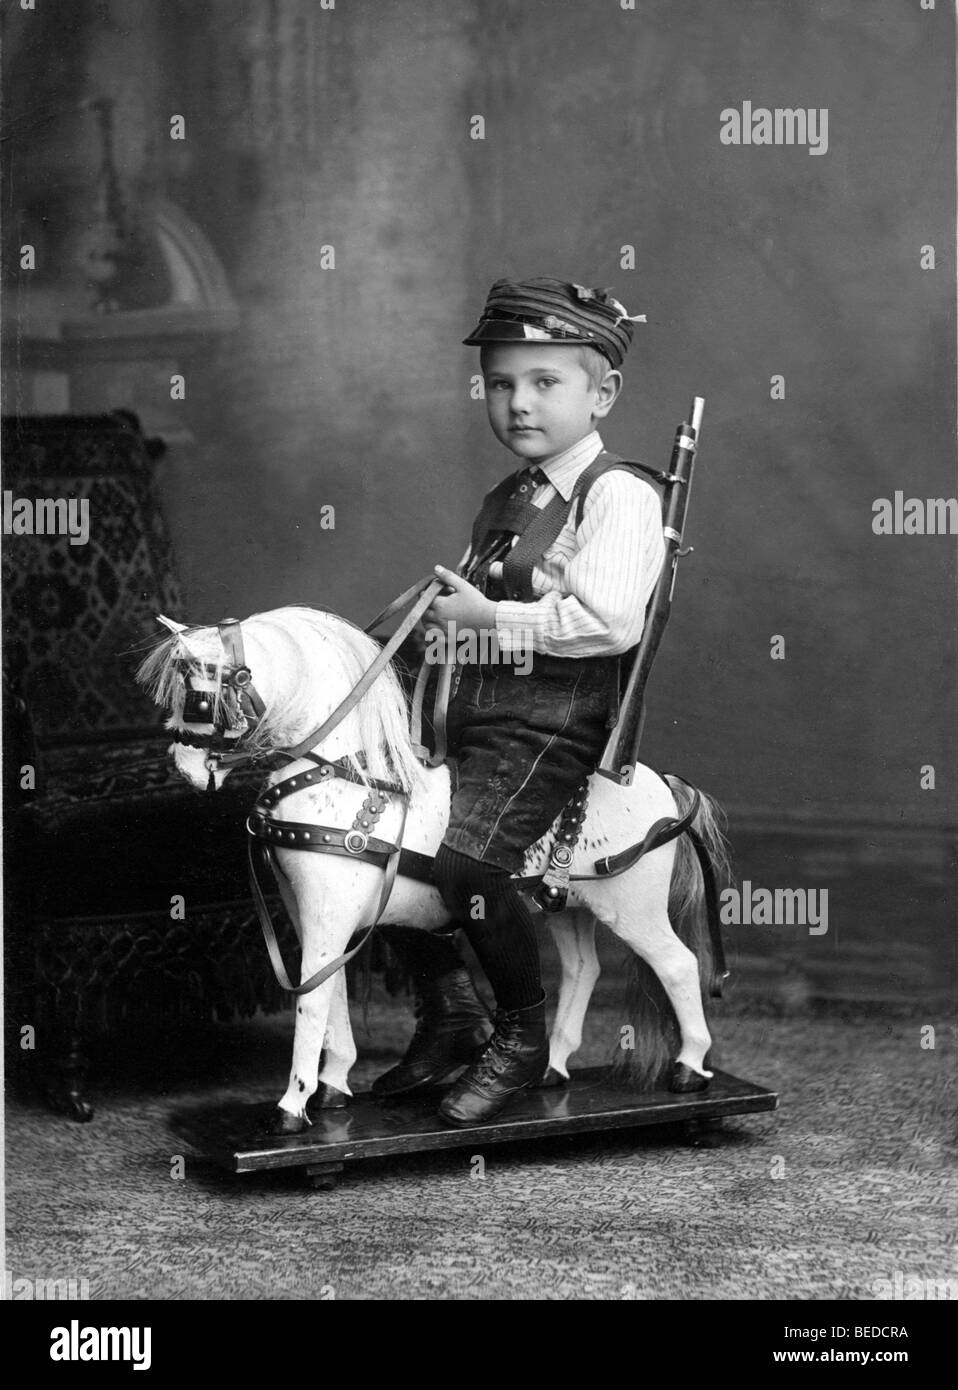 Photographie historique, jeune garçon assis sur un cheval à bascule, vers 1905 Banque D'Images